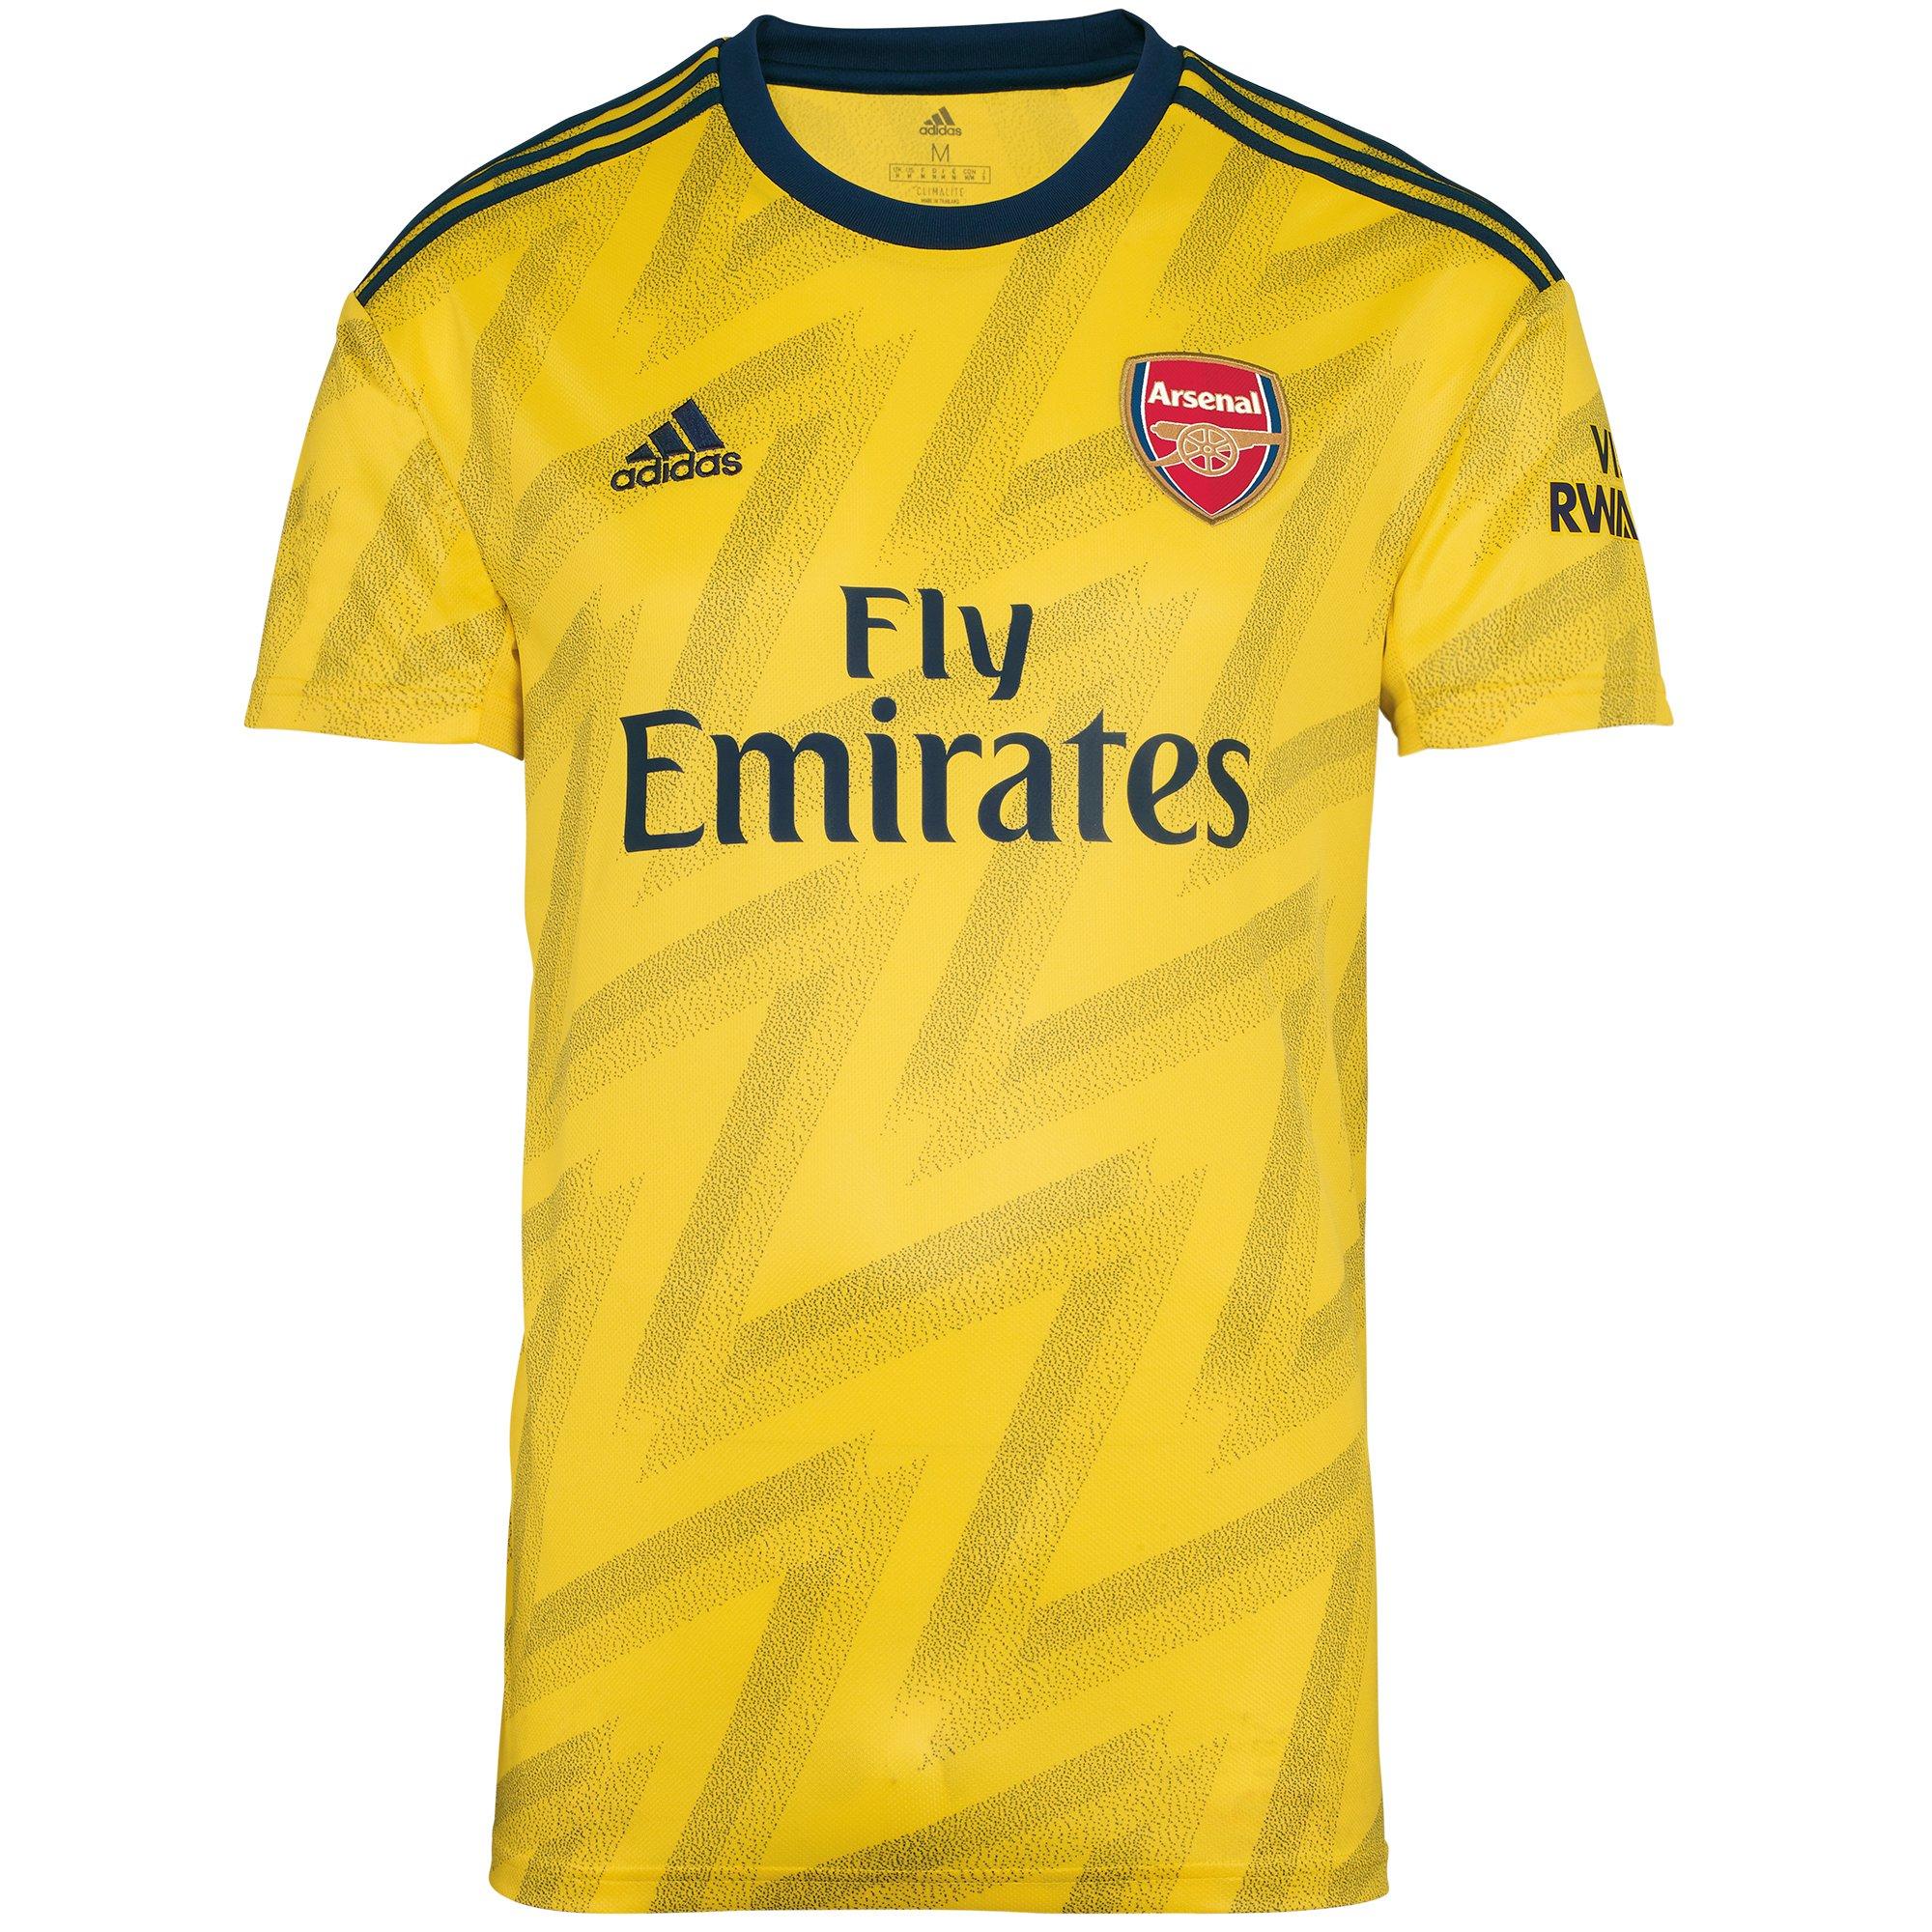 Arsenal Adult 19/20 Away Shirt 